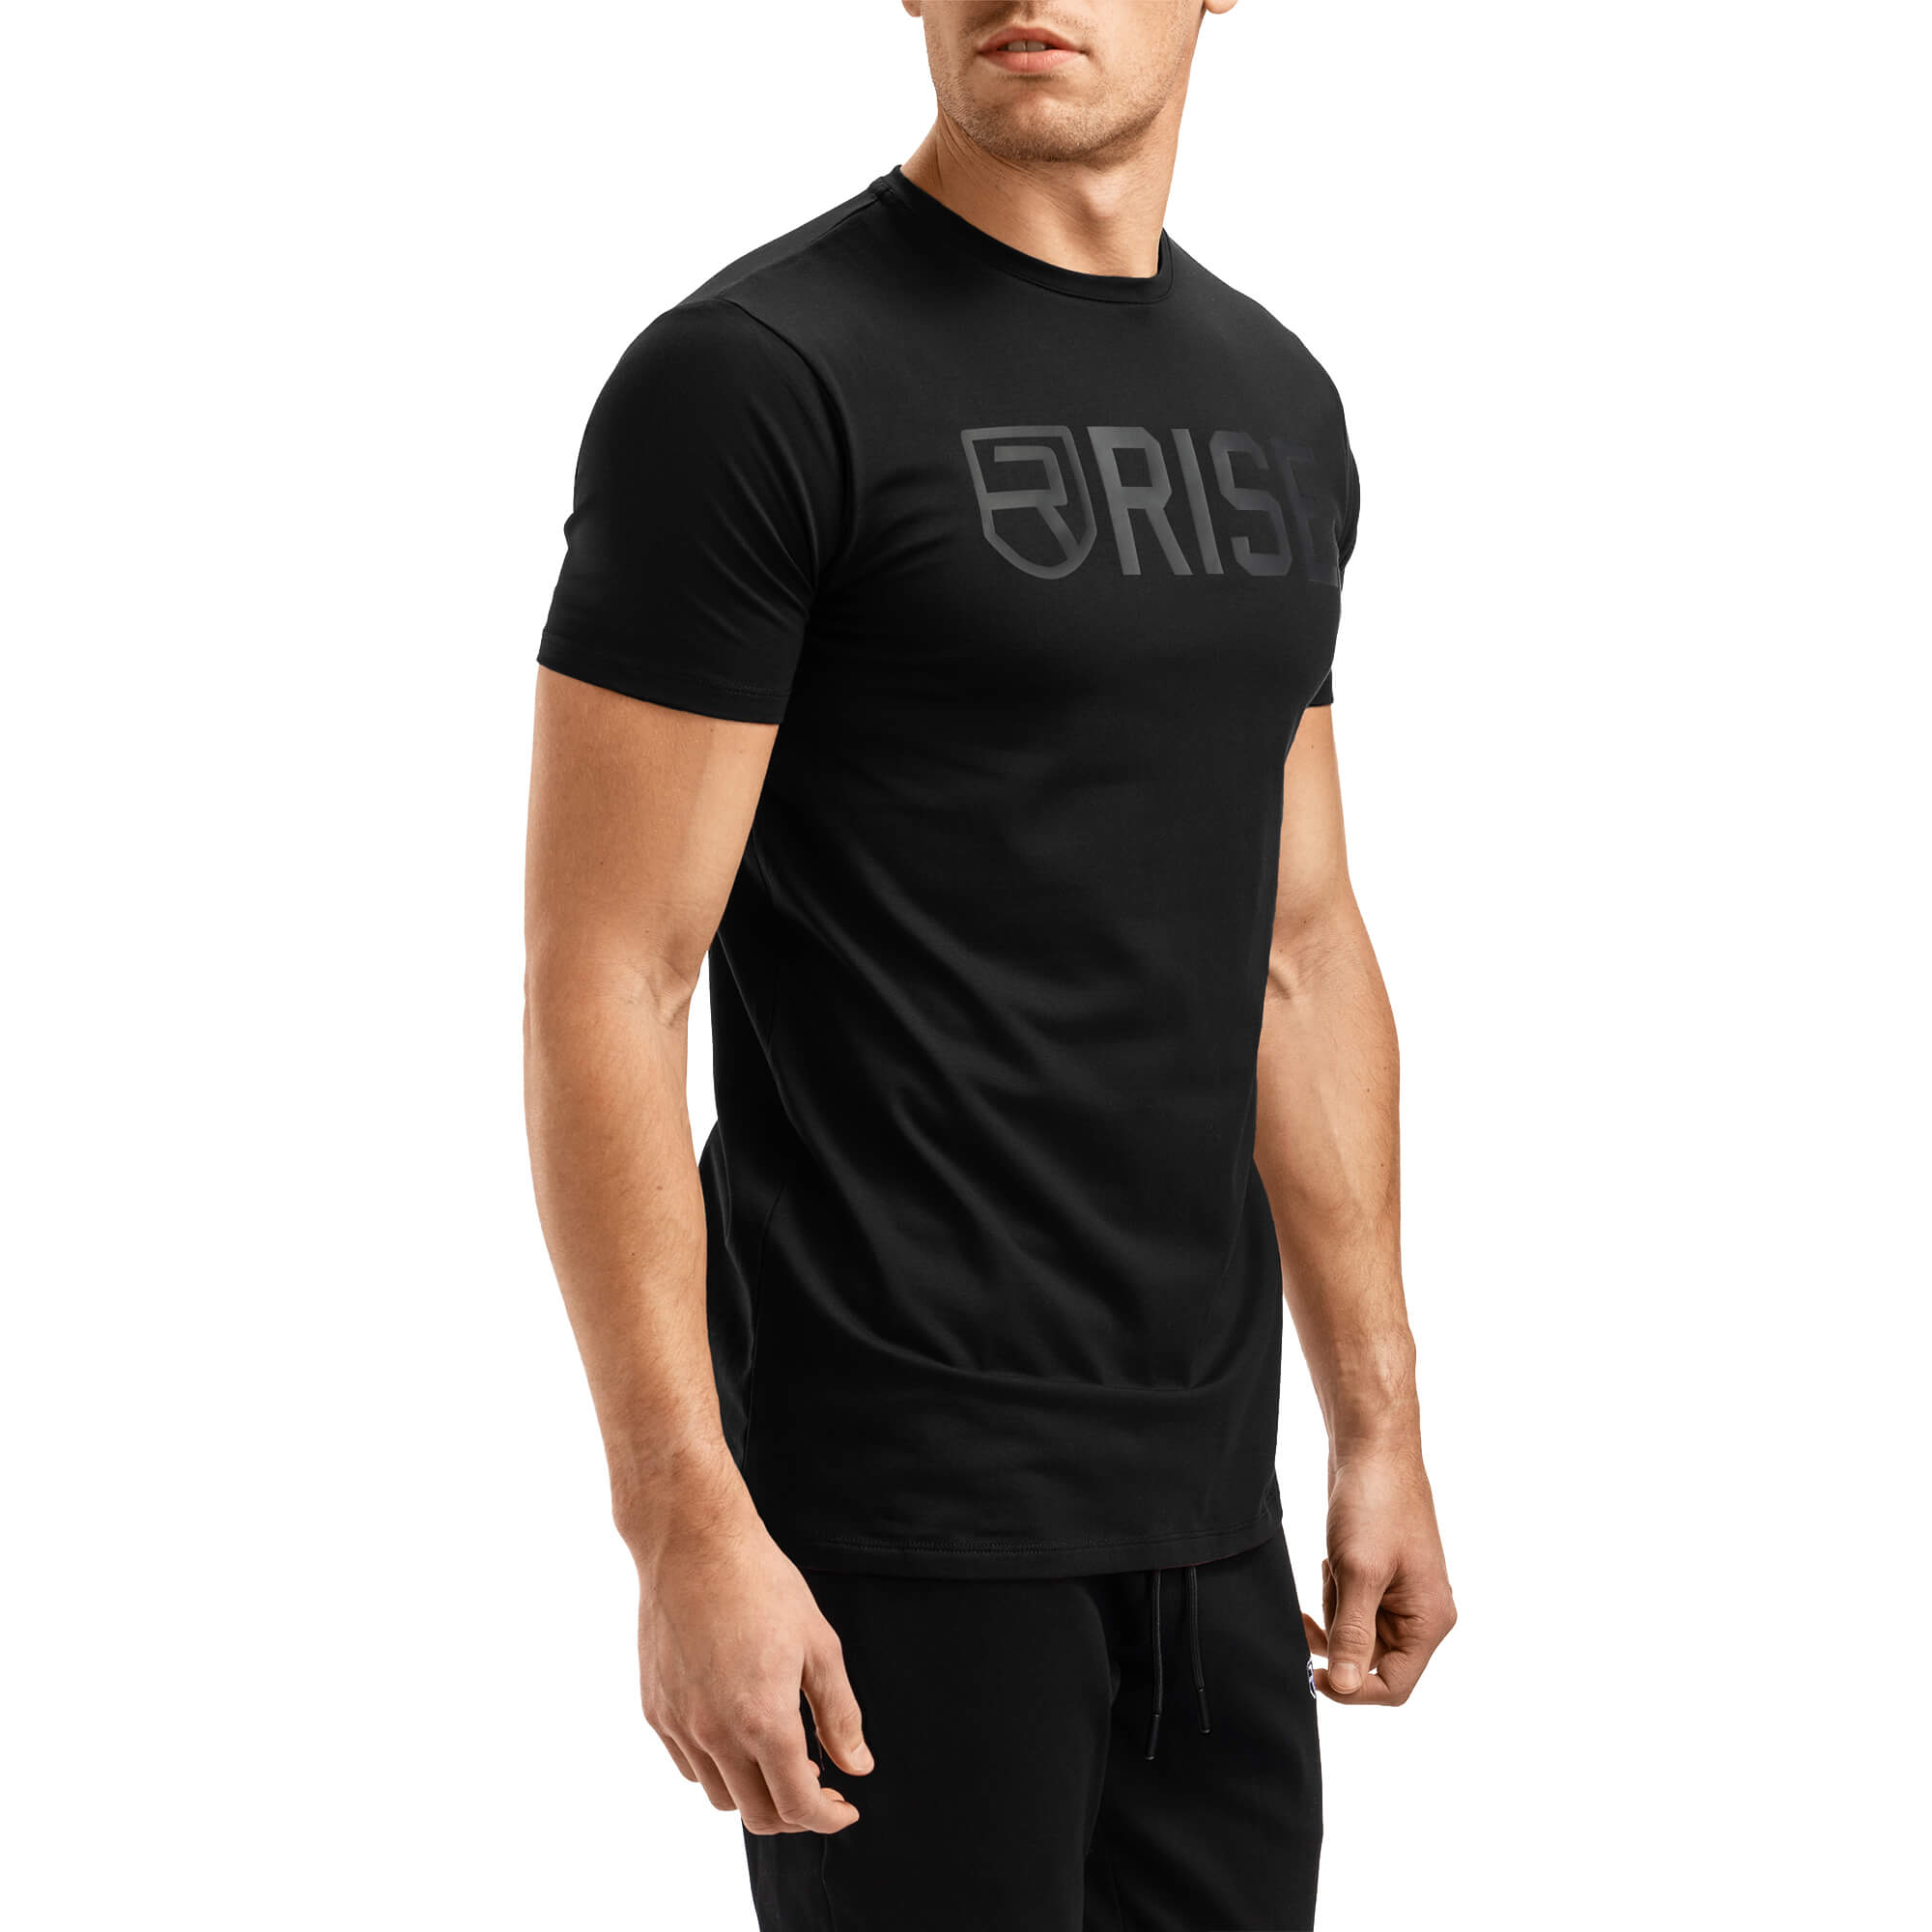 Signature T-Shirt 2.0 - Black on Black